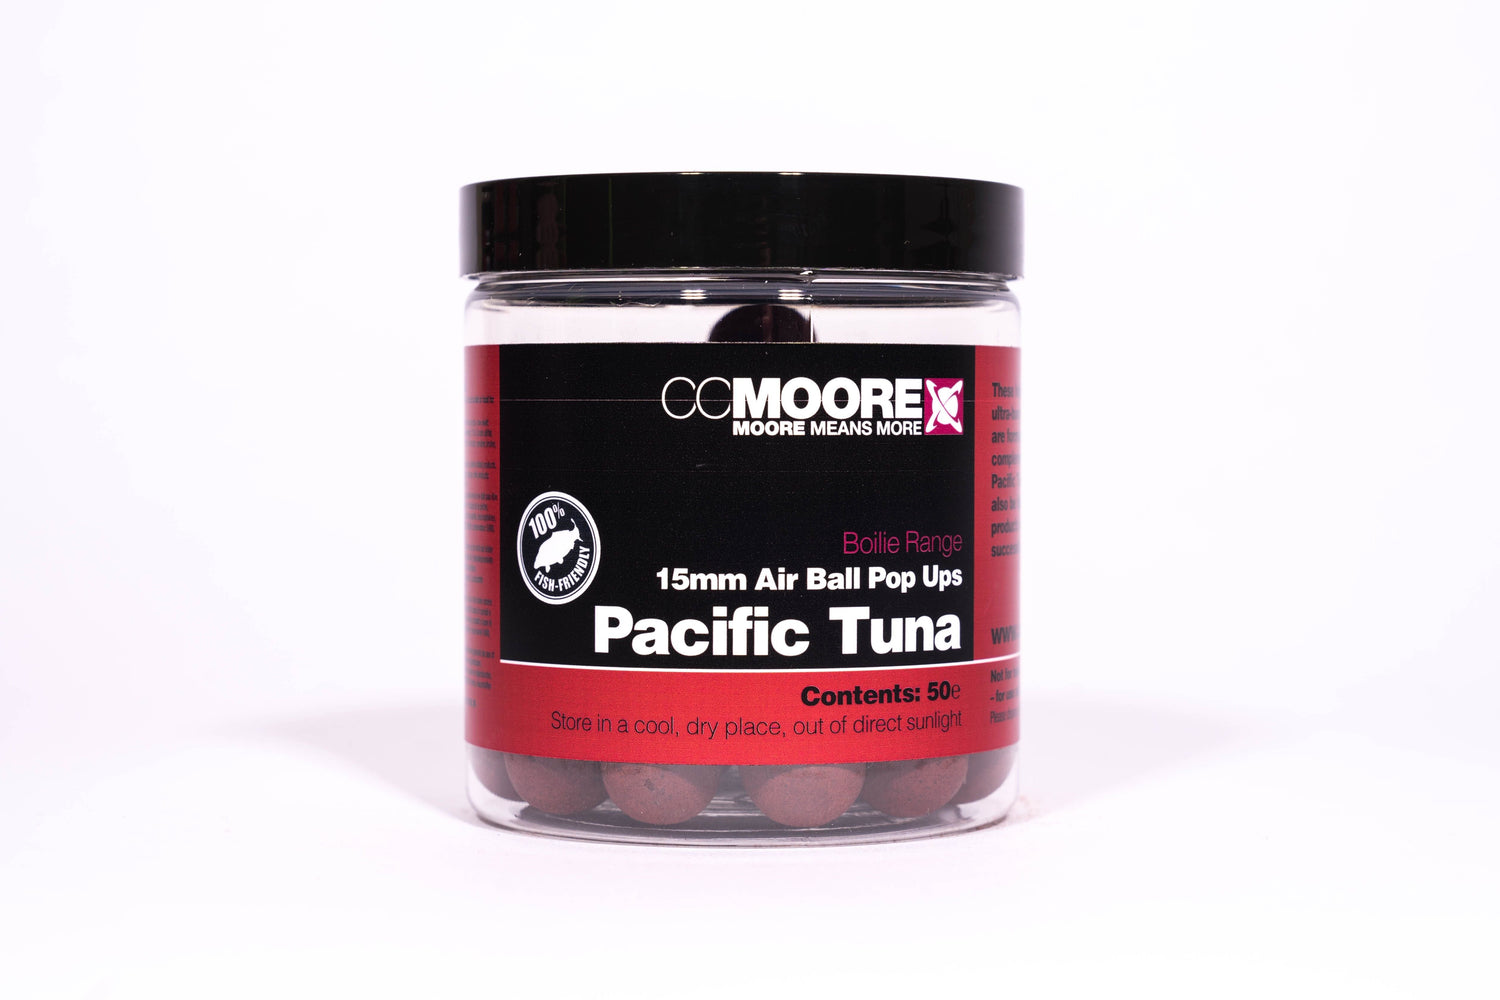 CC Moore Pacific Tuna Air Ball Pop Ups 15mm